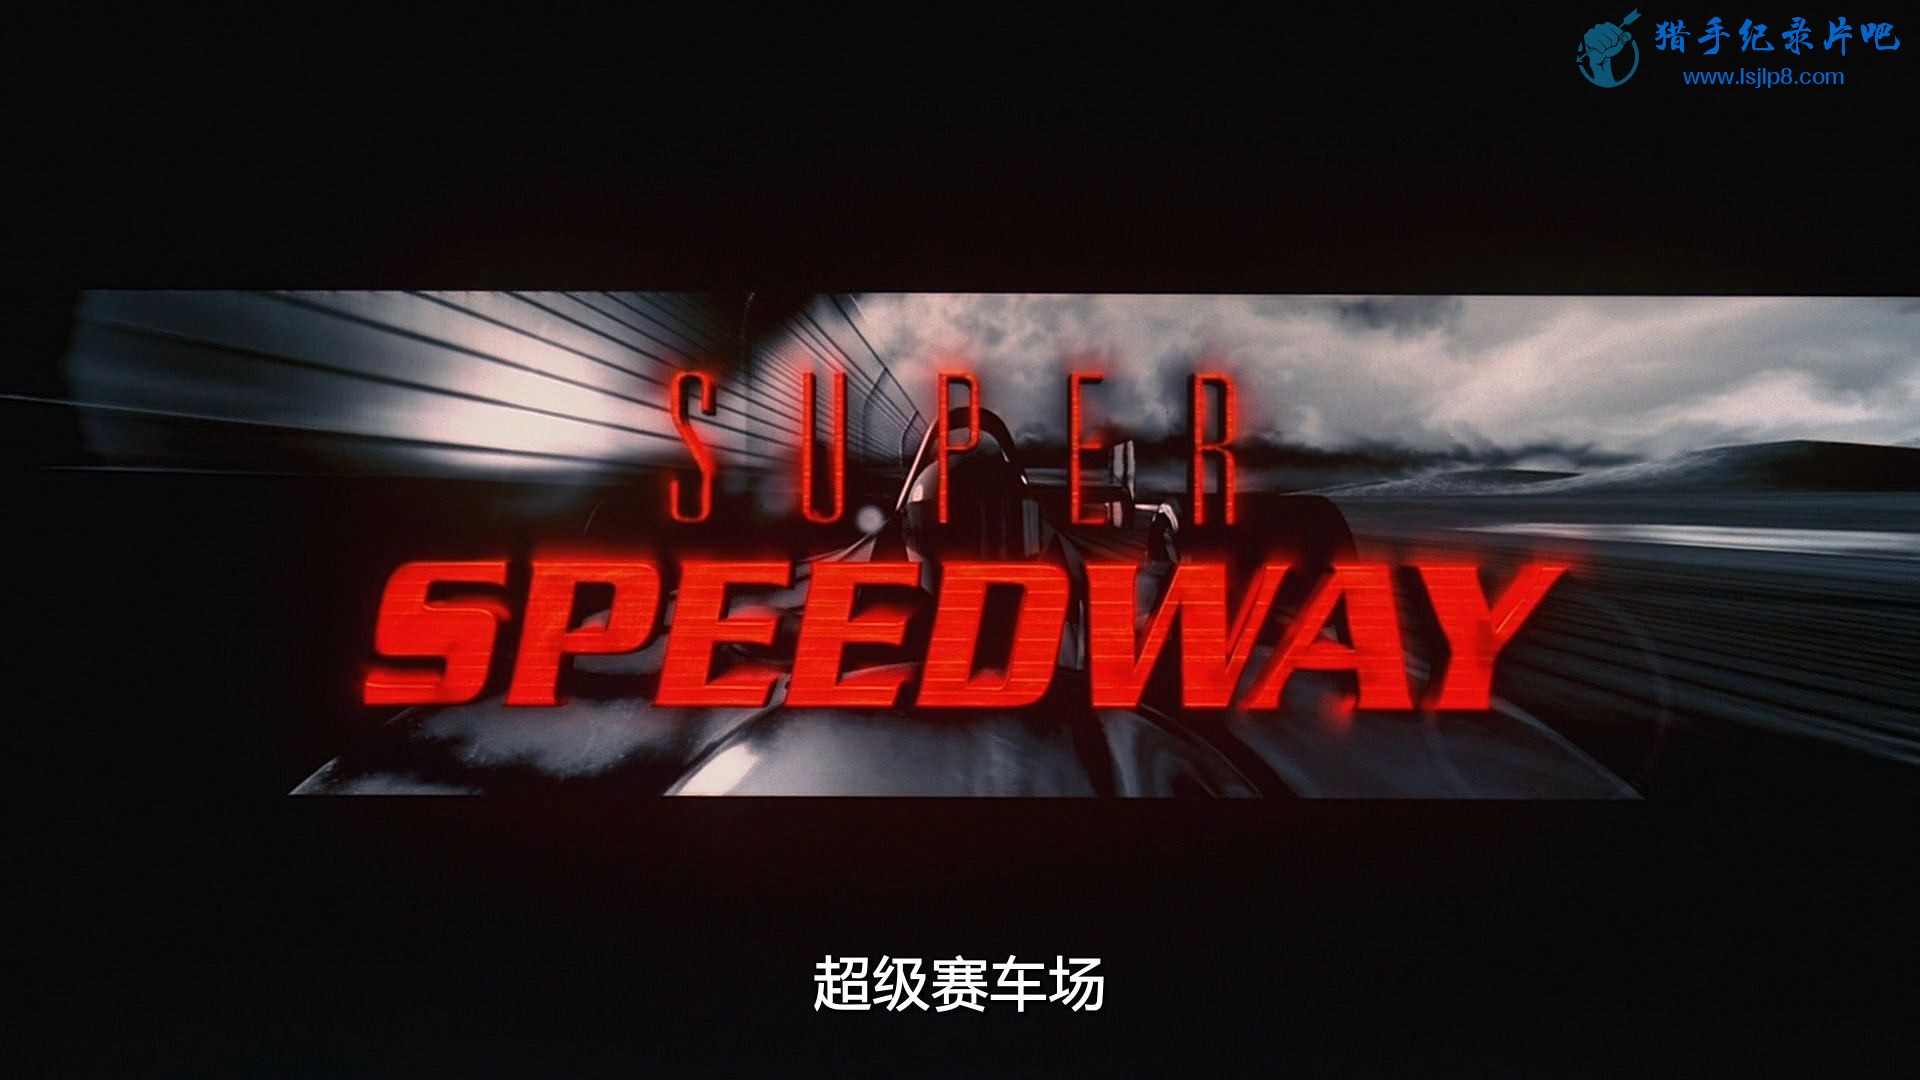 IMAX.Super.Speedway.1997.Bluray.1080p.DTS.Audio.x264-CHD.mkv_20200424_091239.062.jpg